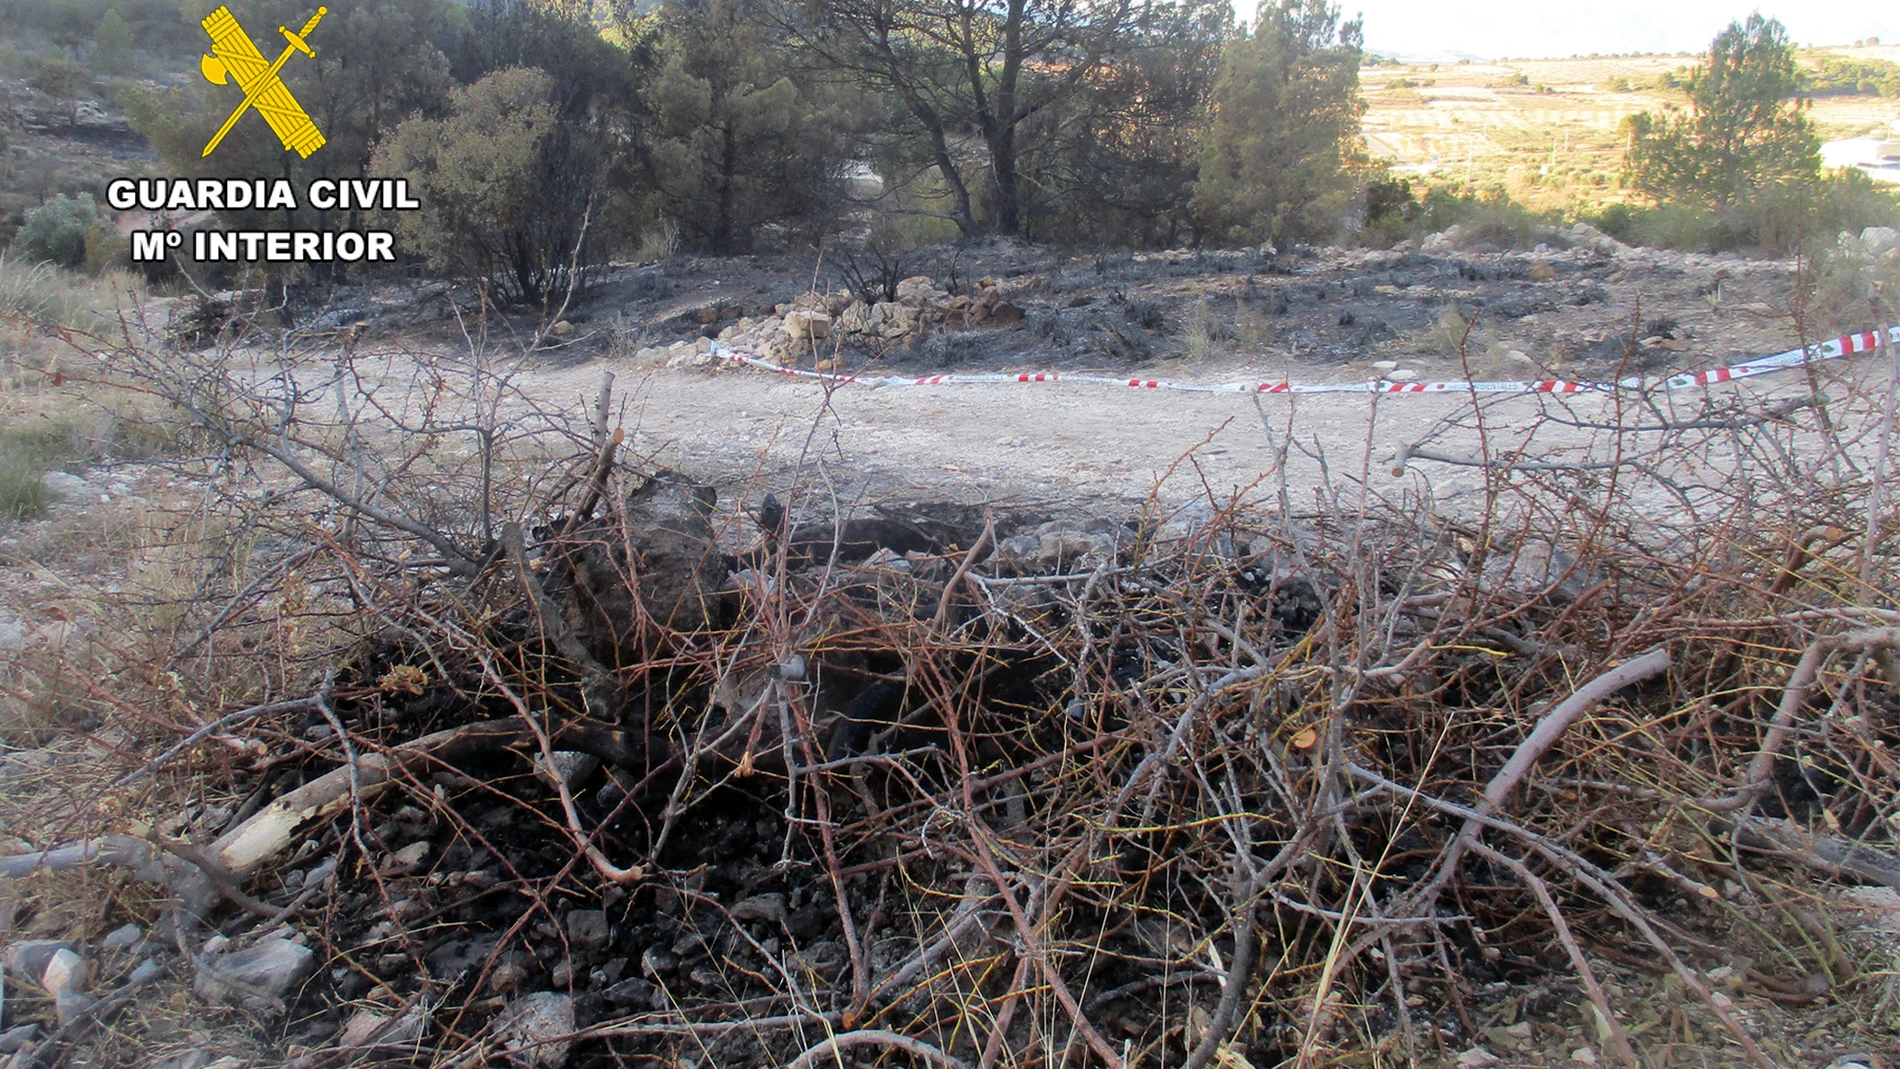 El fuego se originó al descontrolarse una quema de restos de poda vegetal de ramas de almendro, tras abandonar el lugar el responsable de la quema